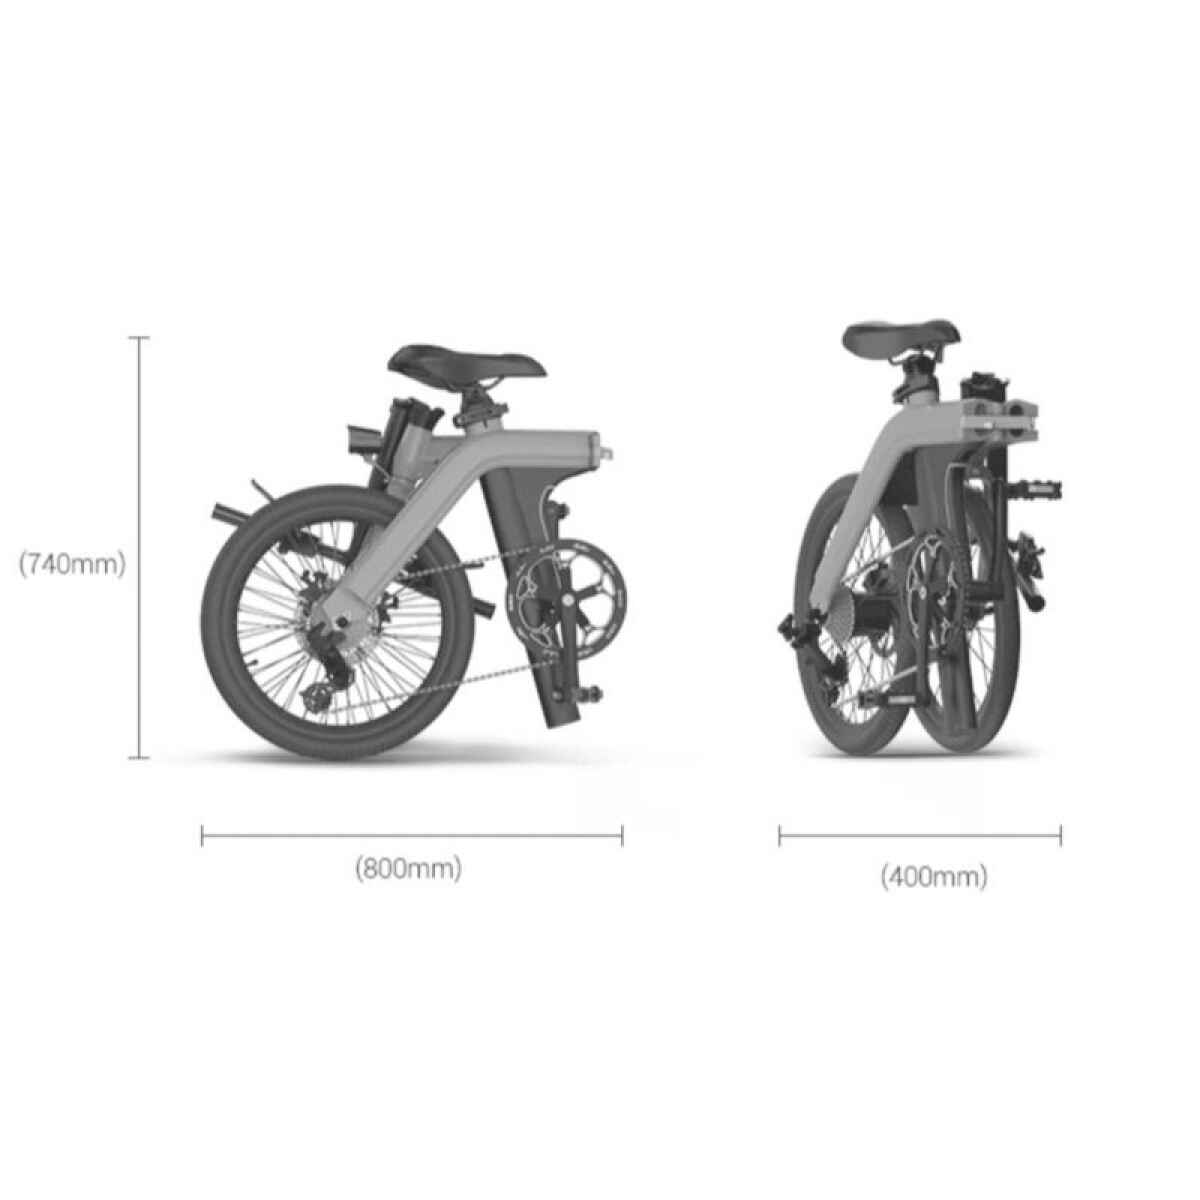 Le dimensioni della e-bike pieghevole di TWHEELS da chiusa: 80 cm x 74 cm.